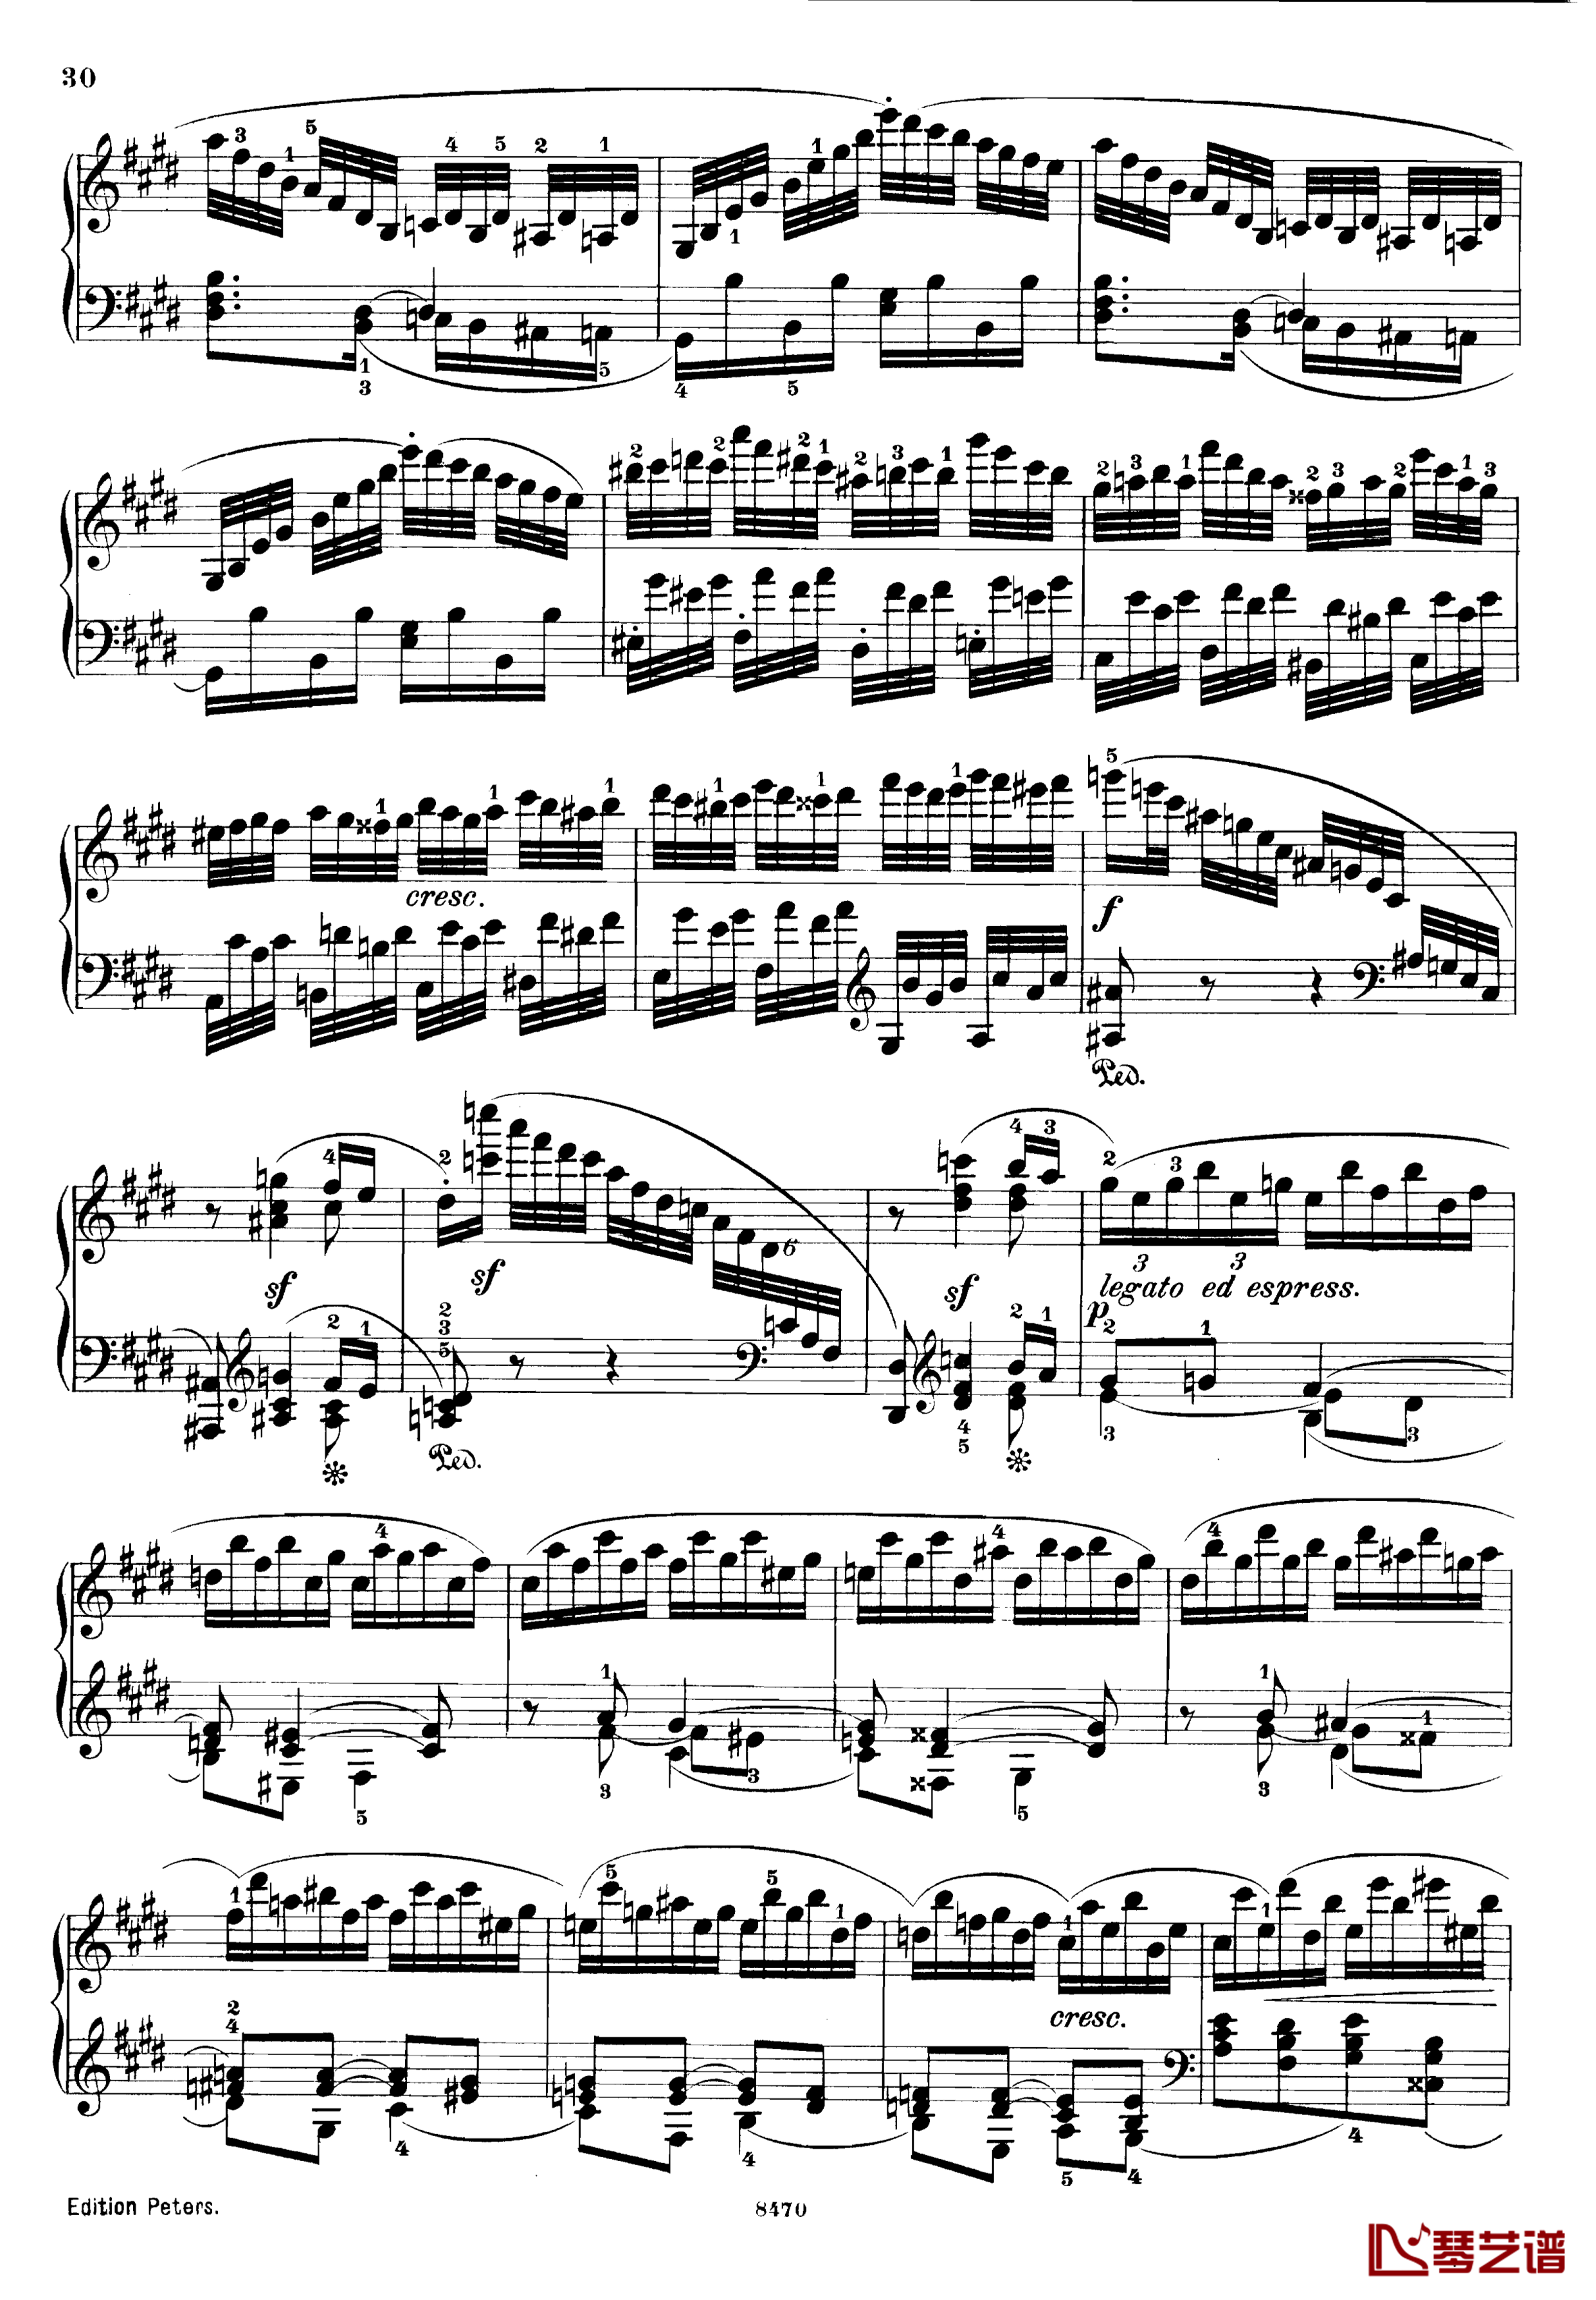 升c小调第三钢琴协奏曲Op.55钢琴谱-克里斯蒂安-里斯30